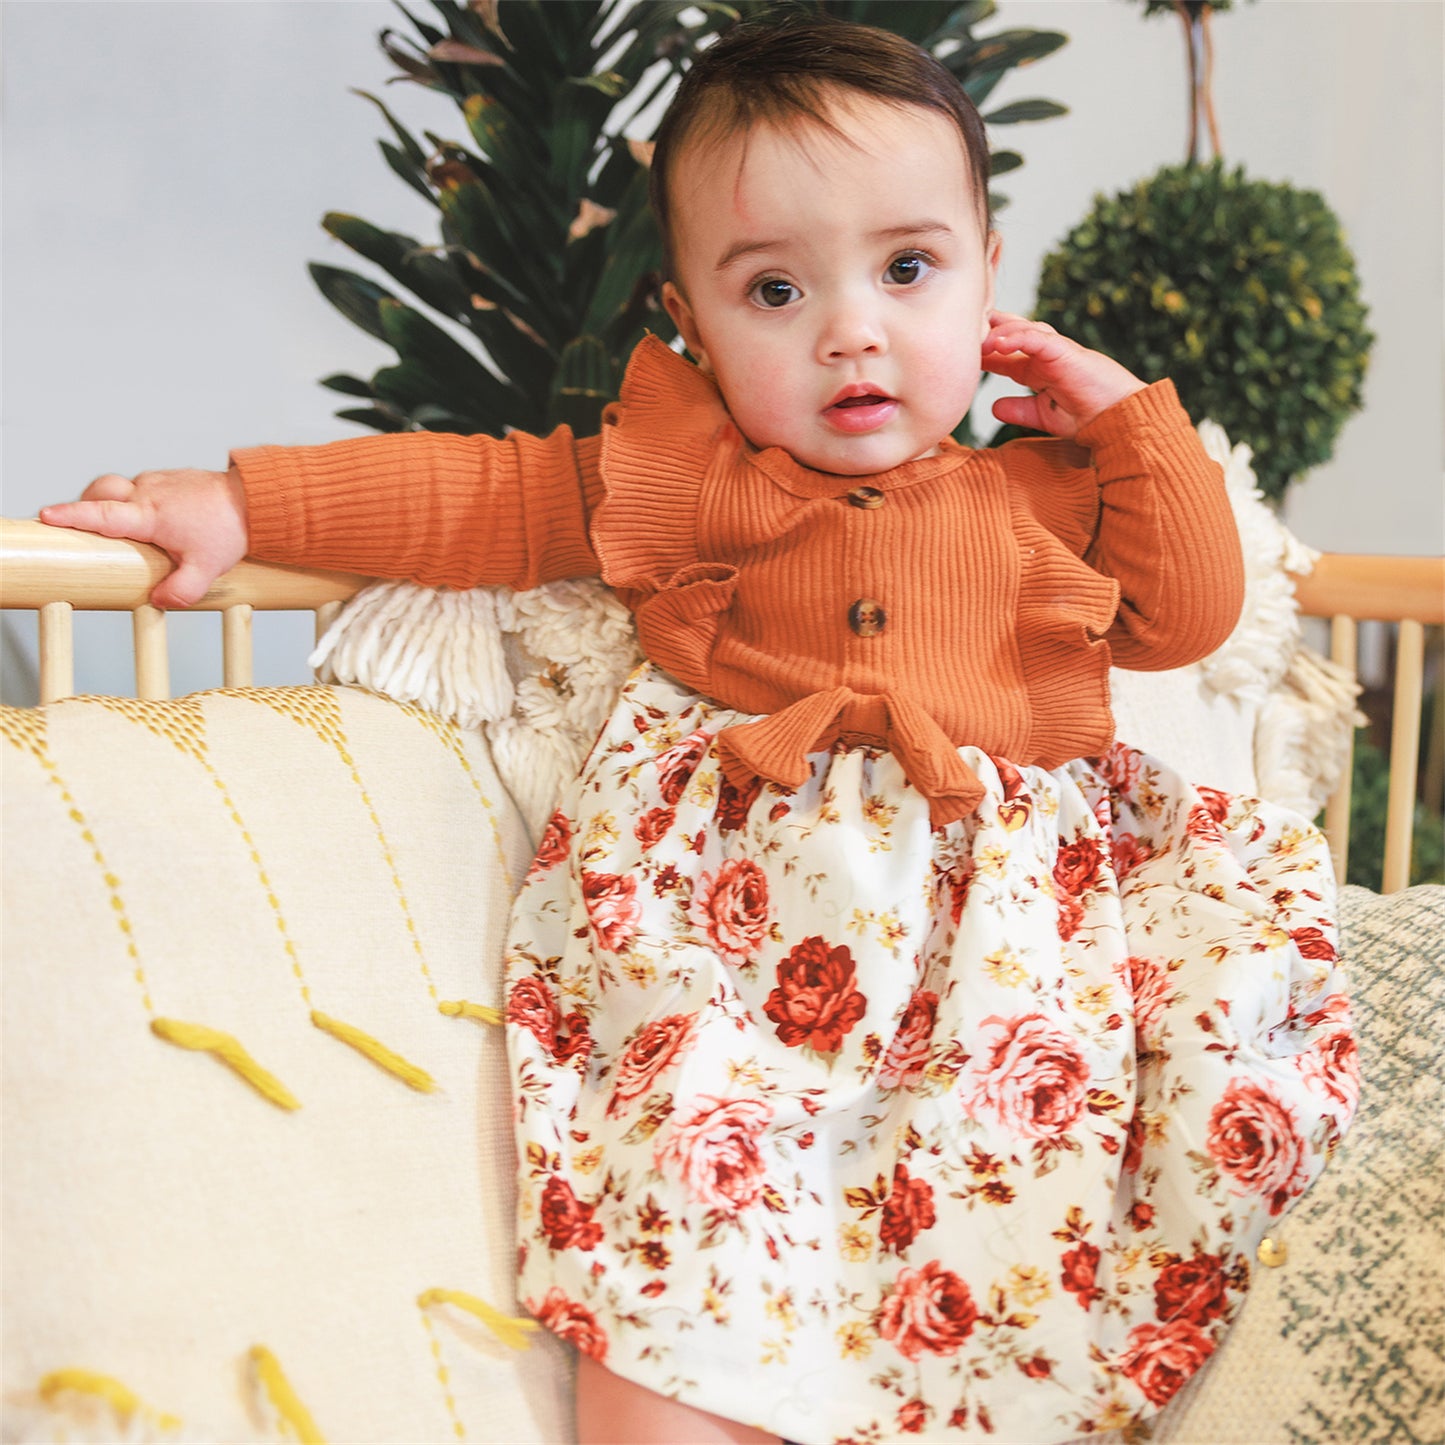 2pcs Baby Solid Ribbed Long-sleeve Ruffle Bowknot Floral Print Dress Set